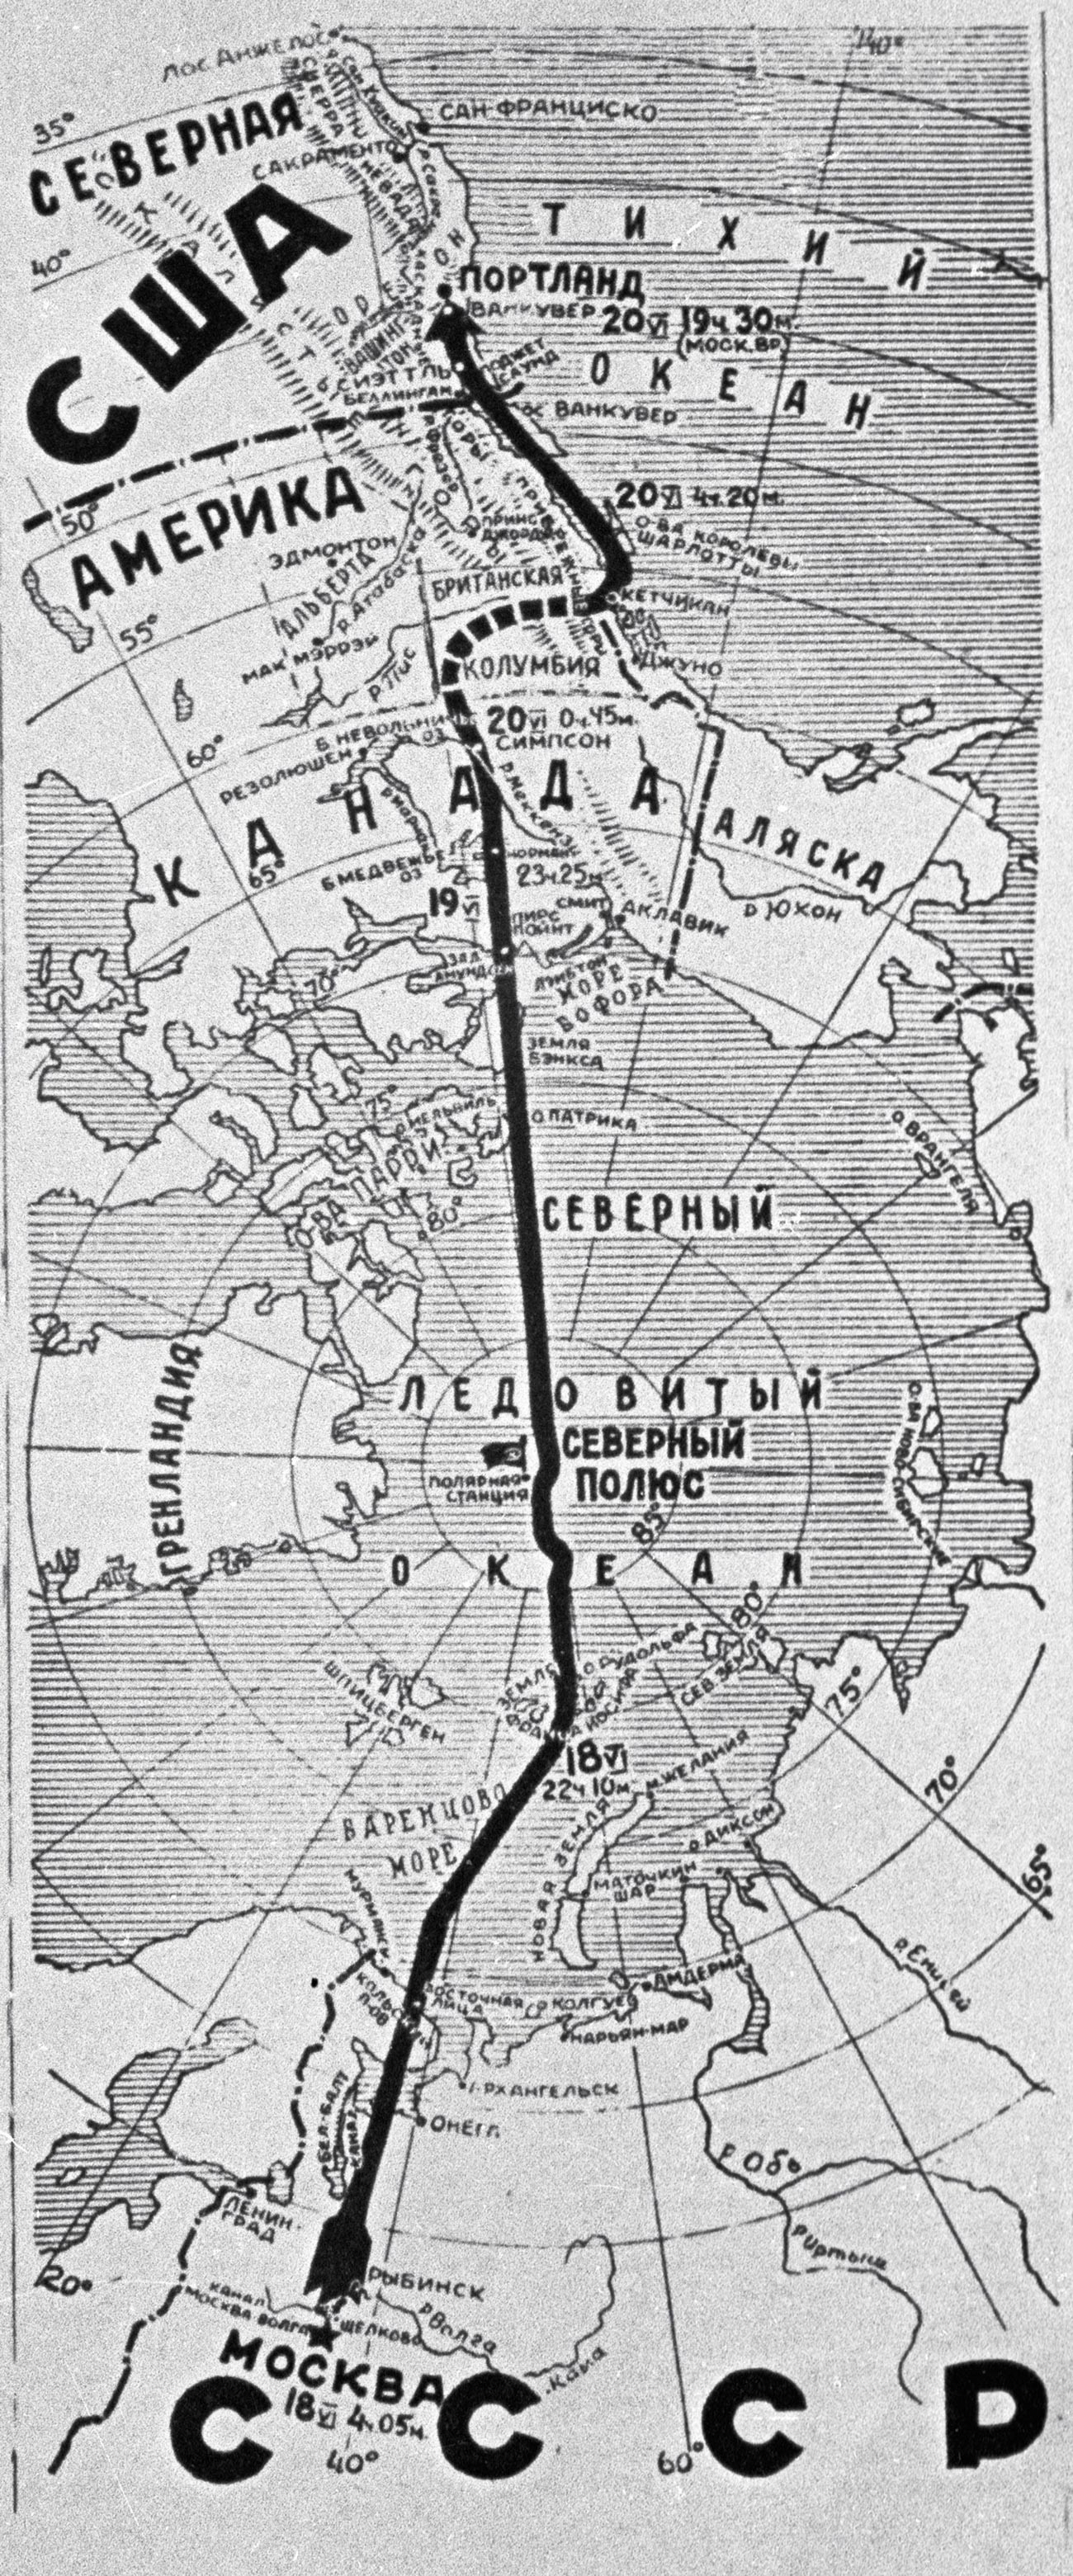 Беспосадочный перелет через северный полюс из ссср. Перелет Чкалова 1937.